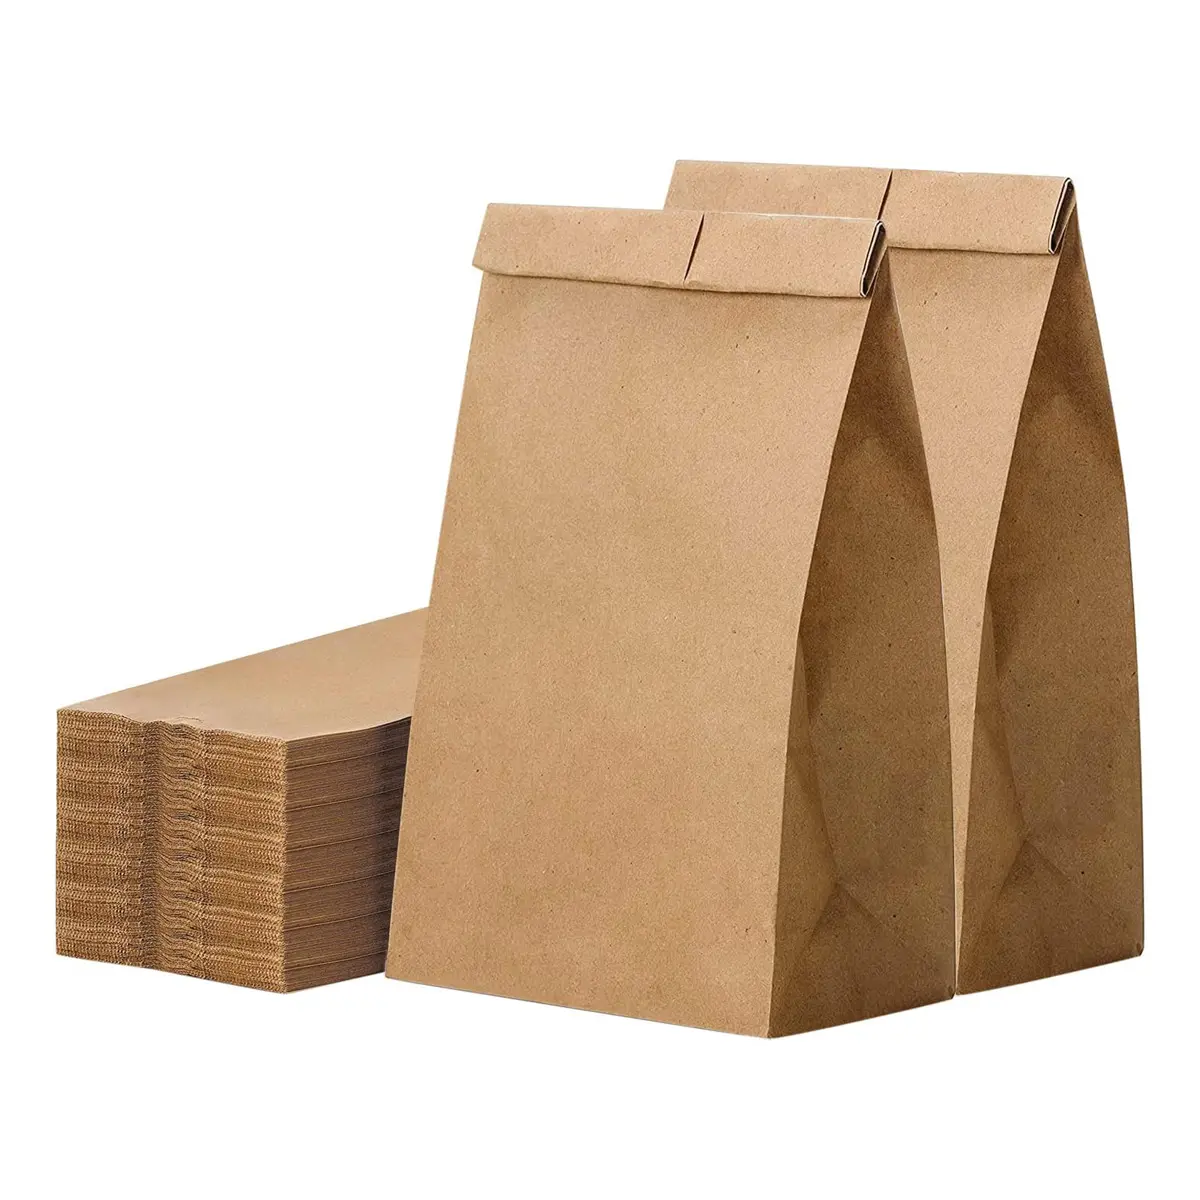 حقيبة طعام قابلة للتحلل الحيوي مصنوعة في الصين مقاومة للدهون حقائب من الورق المقوى بألوان بني وأبيض بشعار مطبوع مخصص